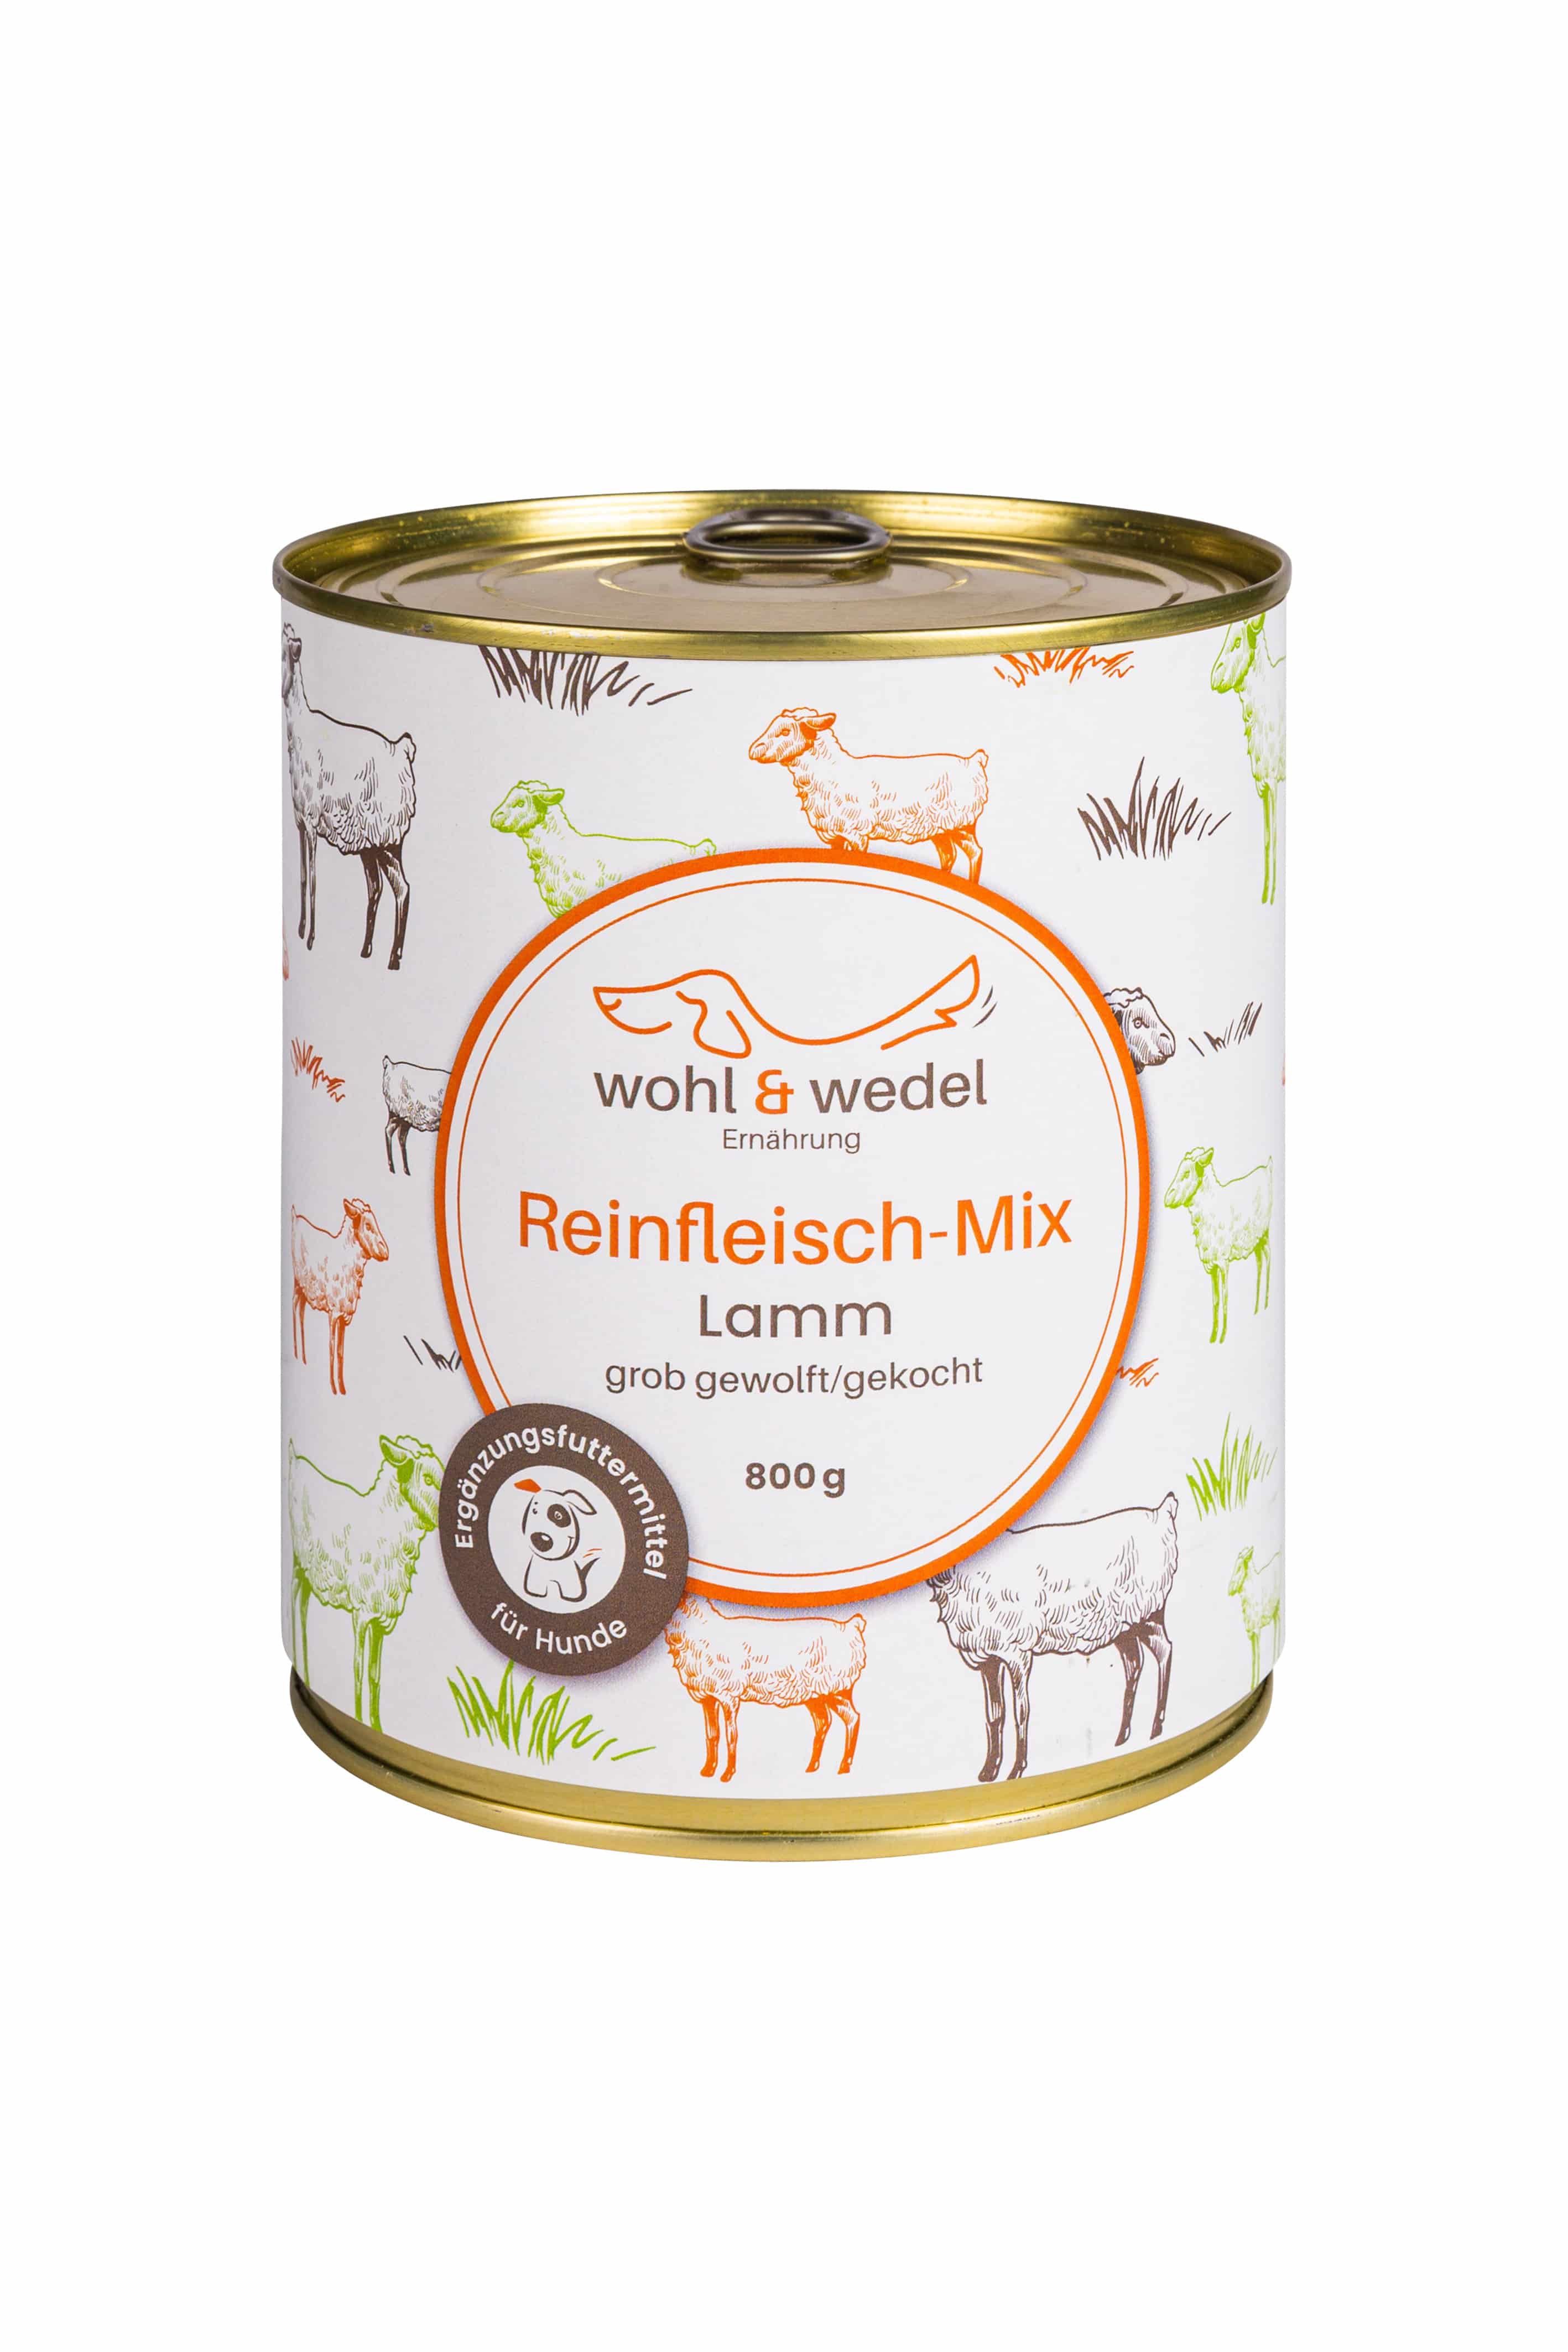 wohl & wedel Reinfleisch-Mix Lamm 800 g